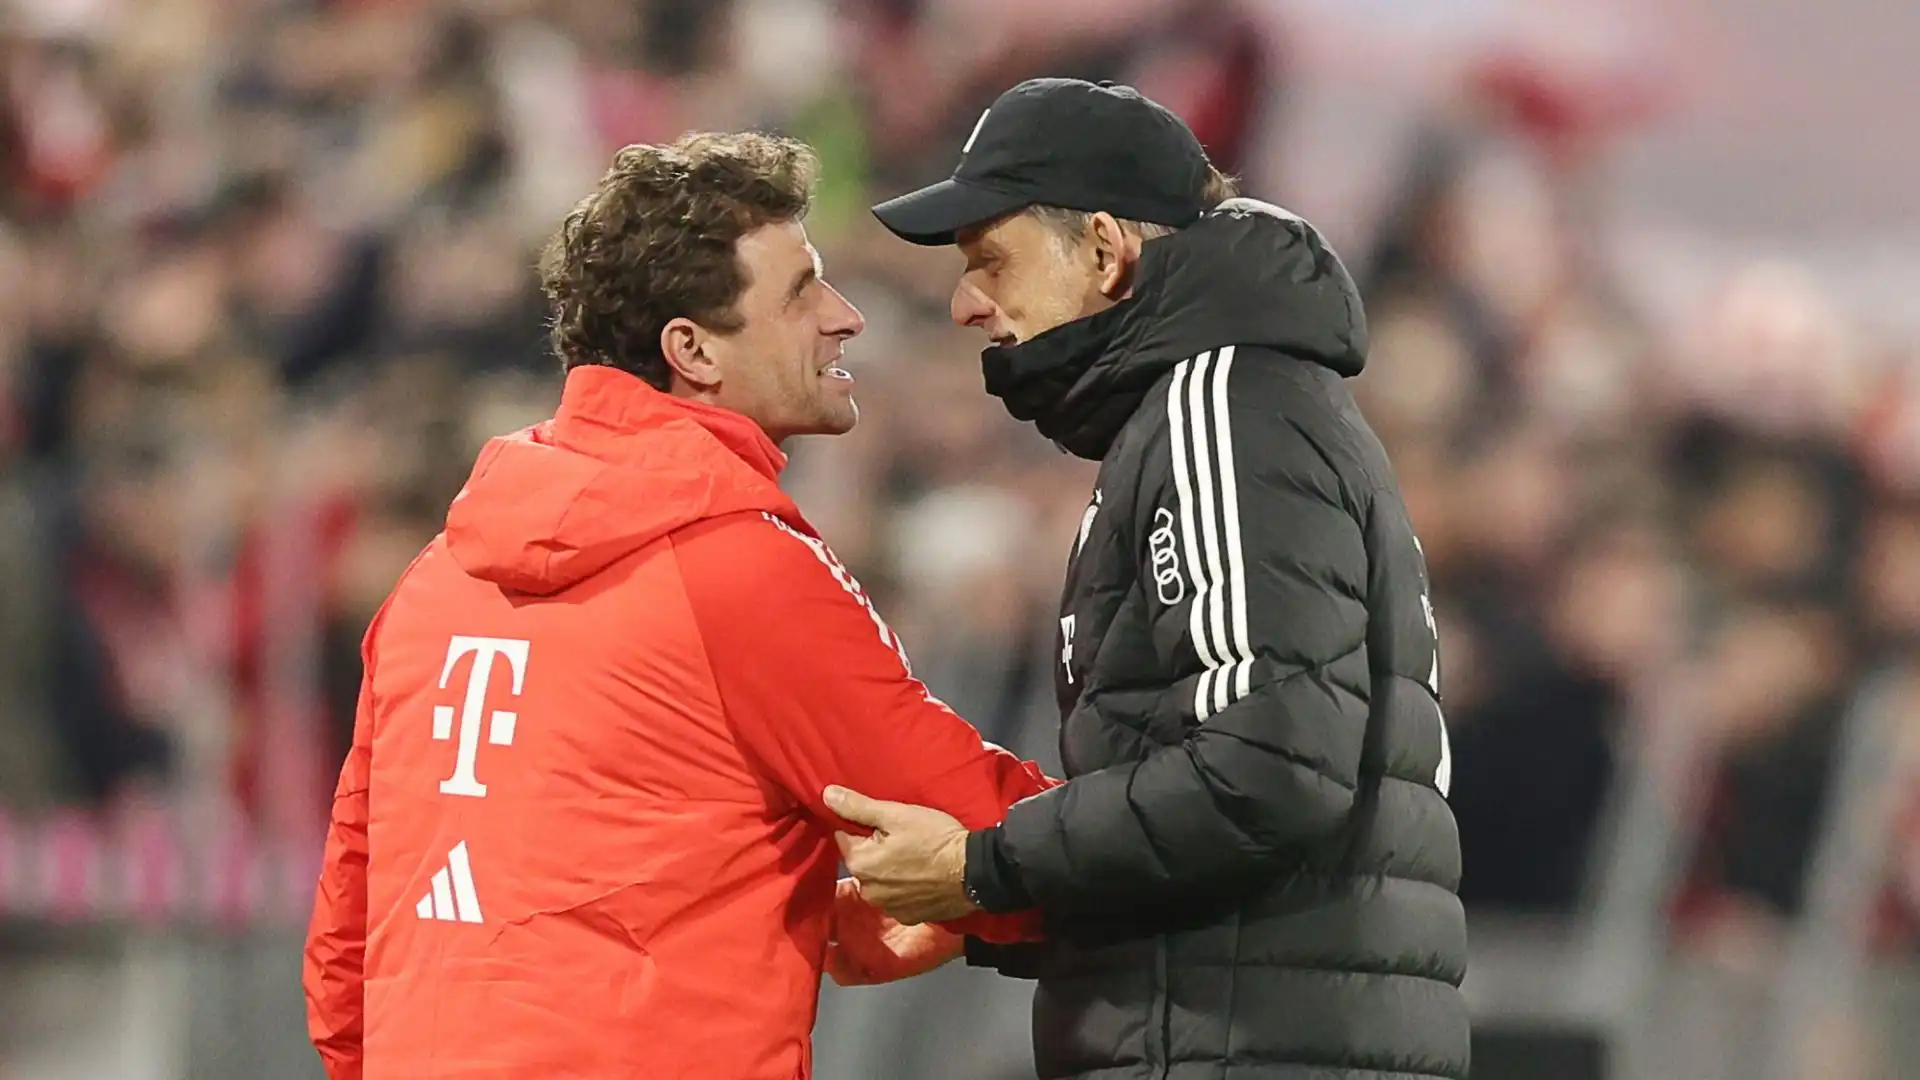 Tanti tifosi sui social vogliono l'attaccante del Bayern al posto di Tuchel, magari coadiuvato dal portiere Manuel Neuer